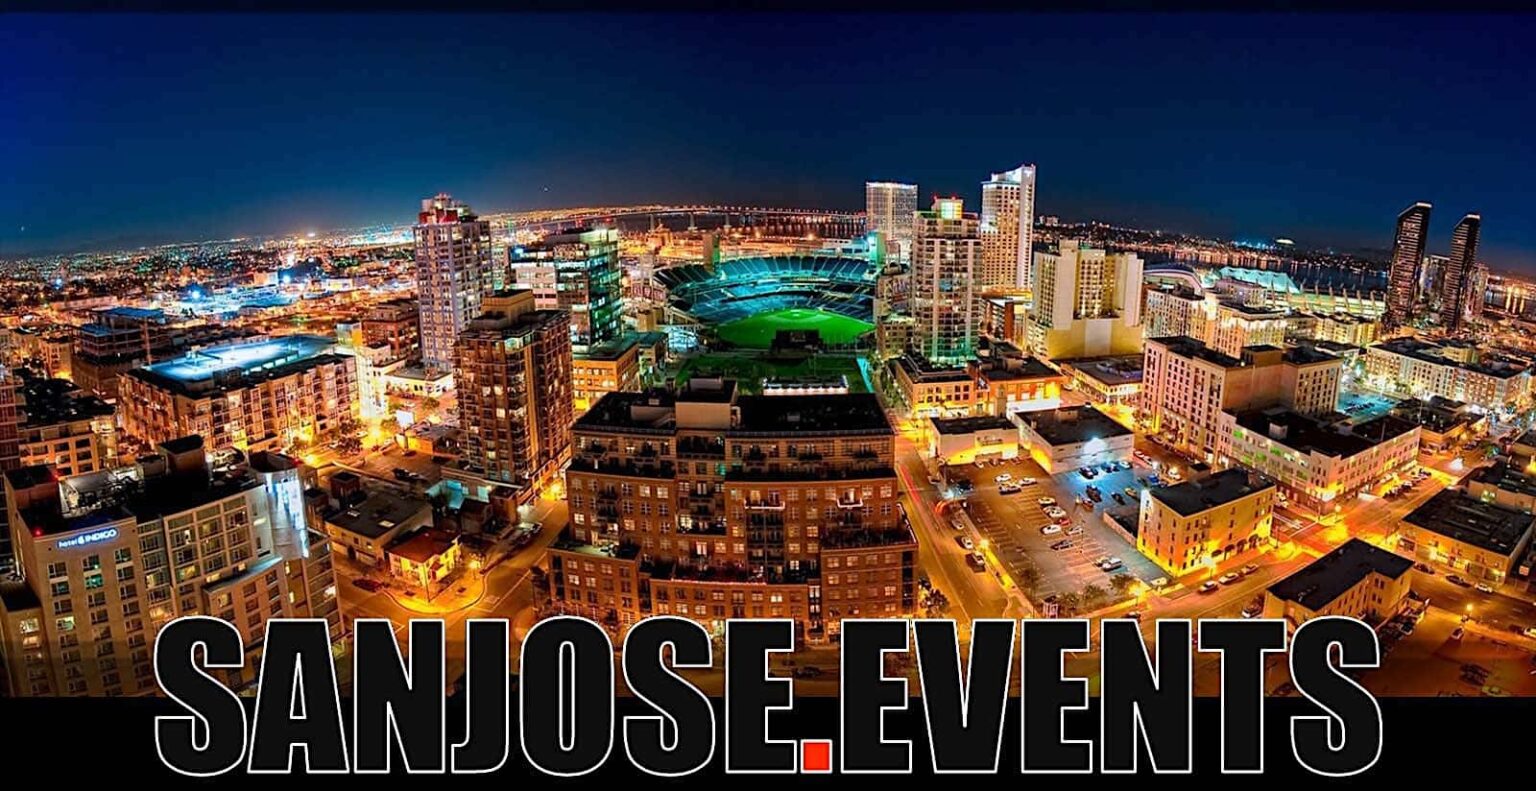 San Jose Events San Jose Events